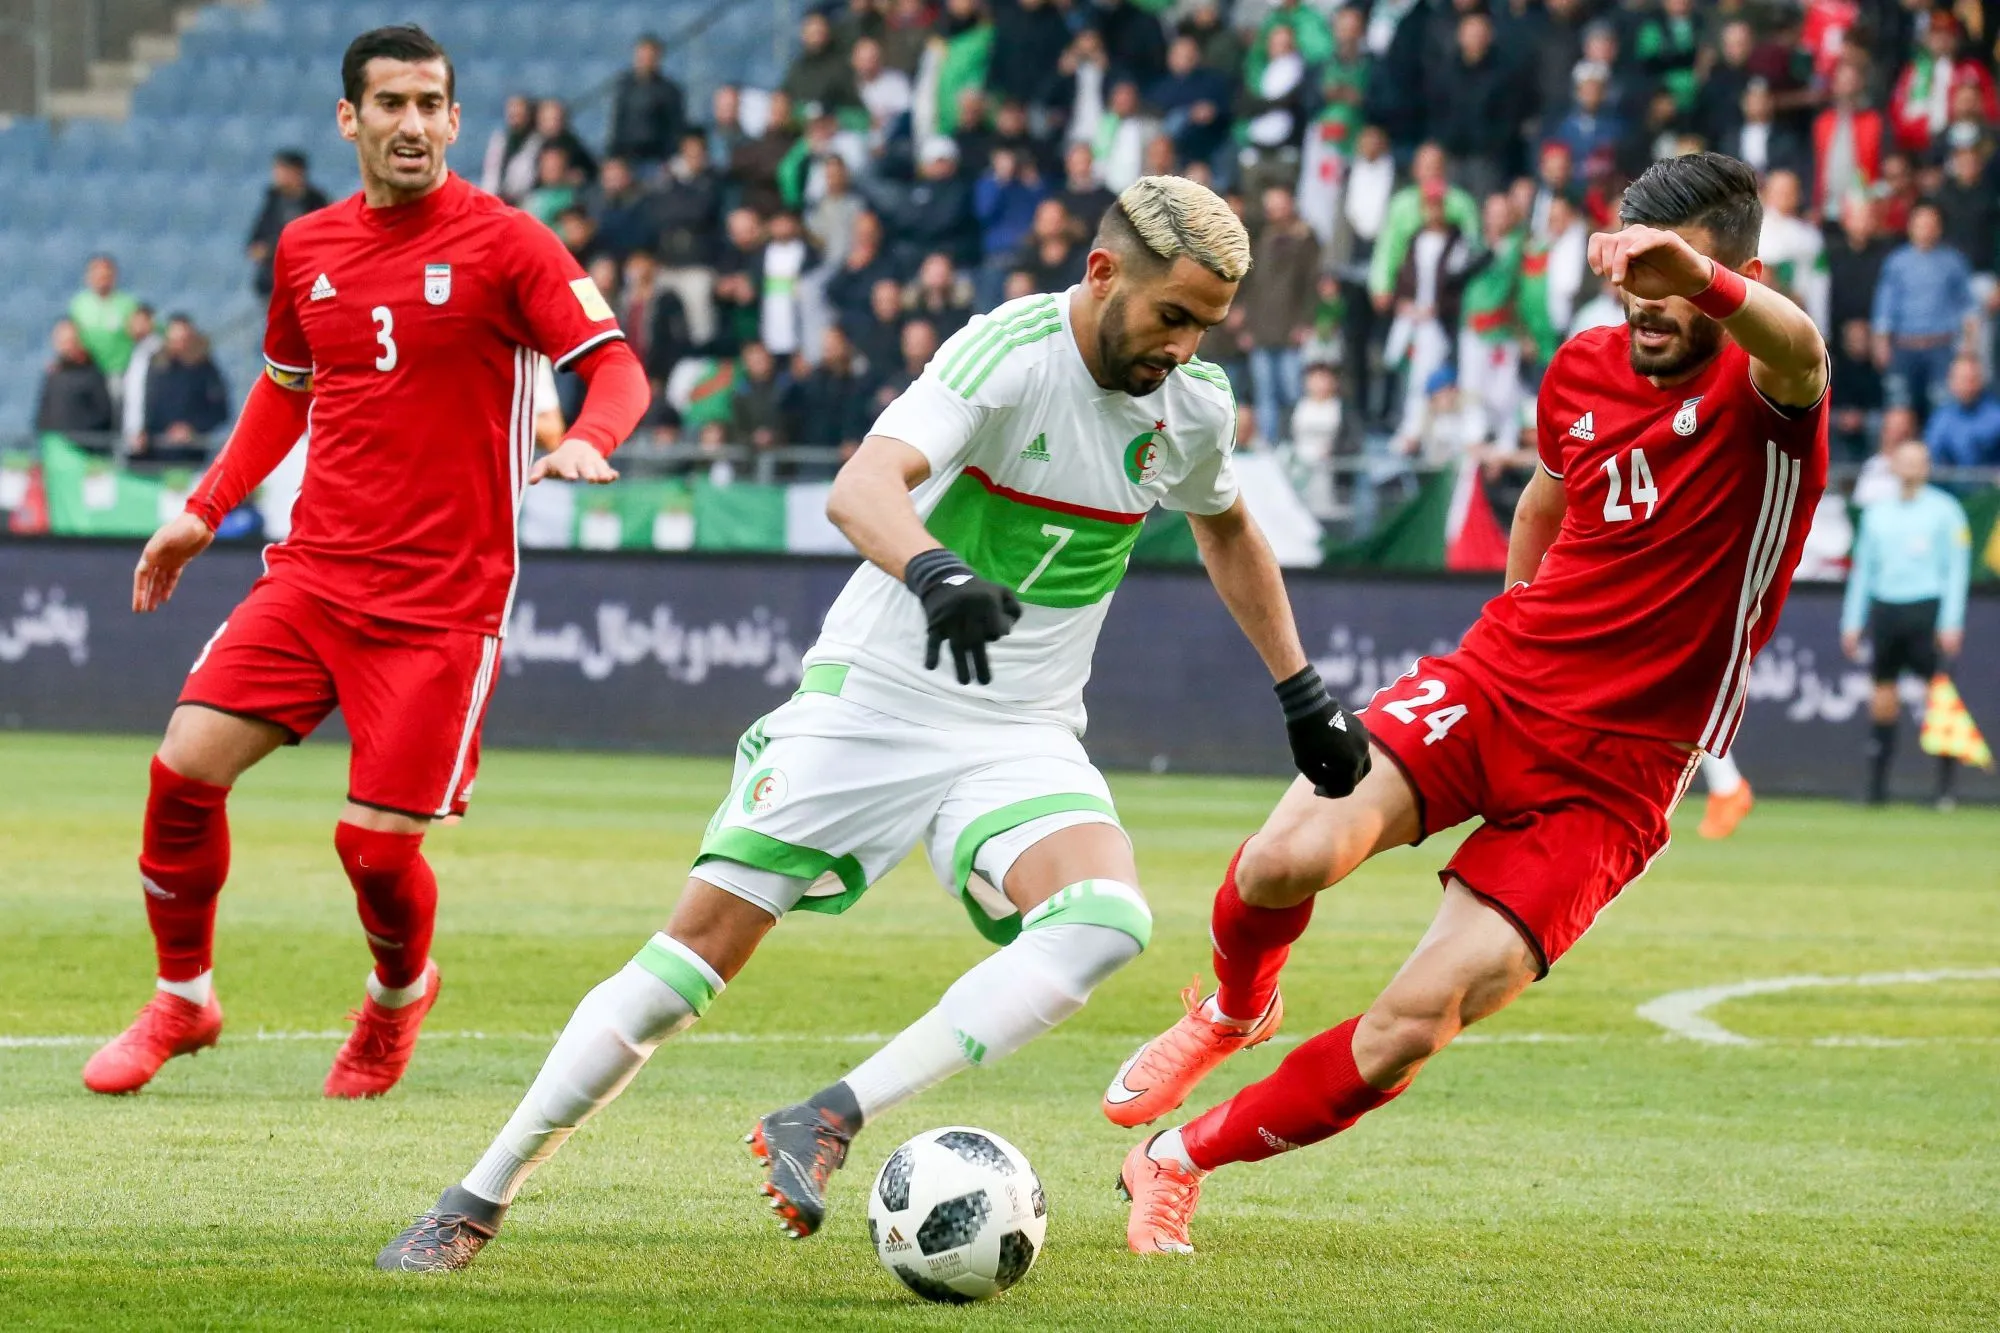 Pronostic Algérie Nigeria : Analyse, prono et cotes de la demi-finale de la CAN 2019